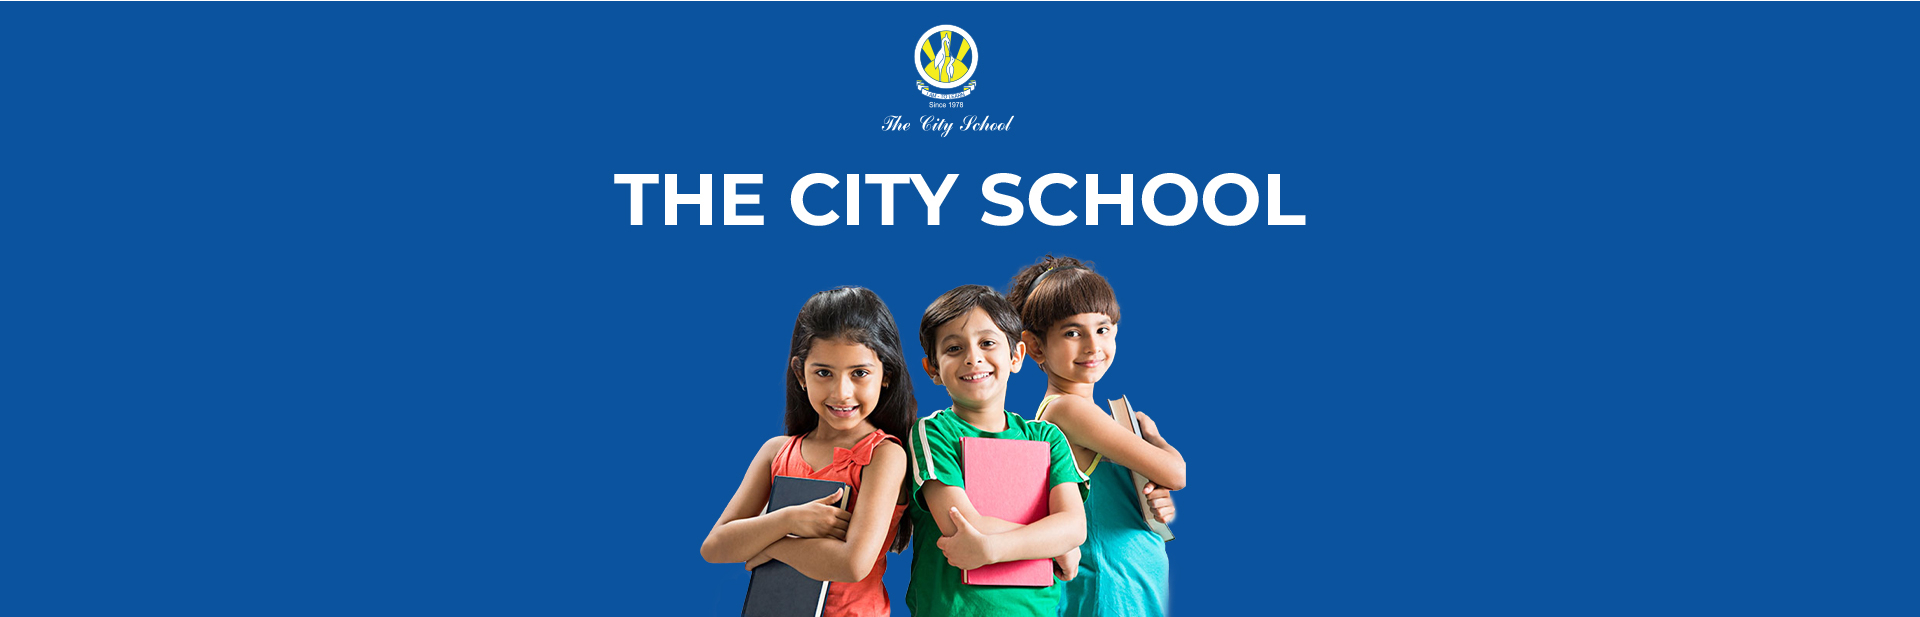 city-school-banner